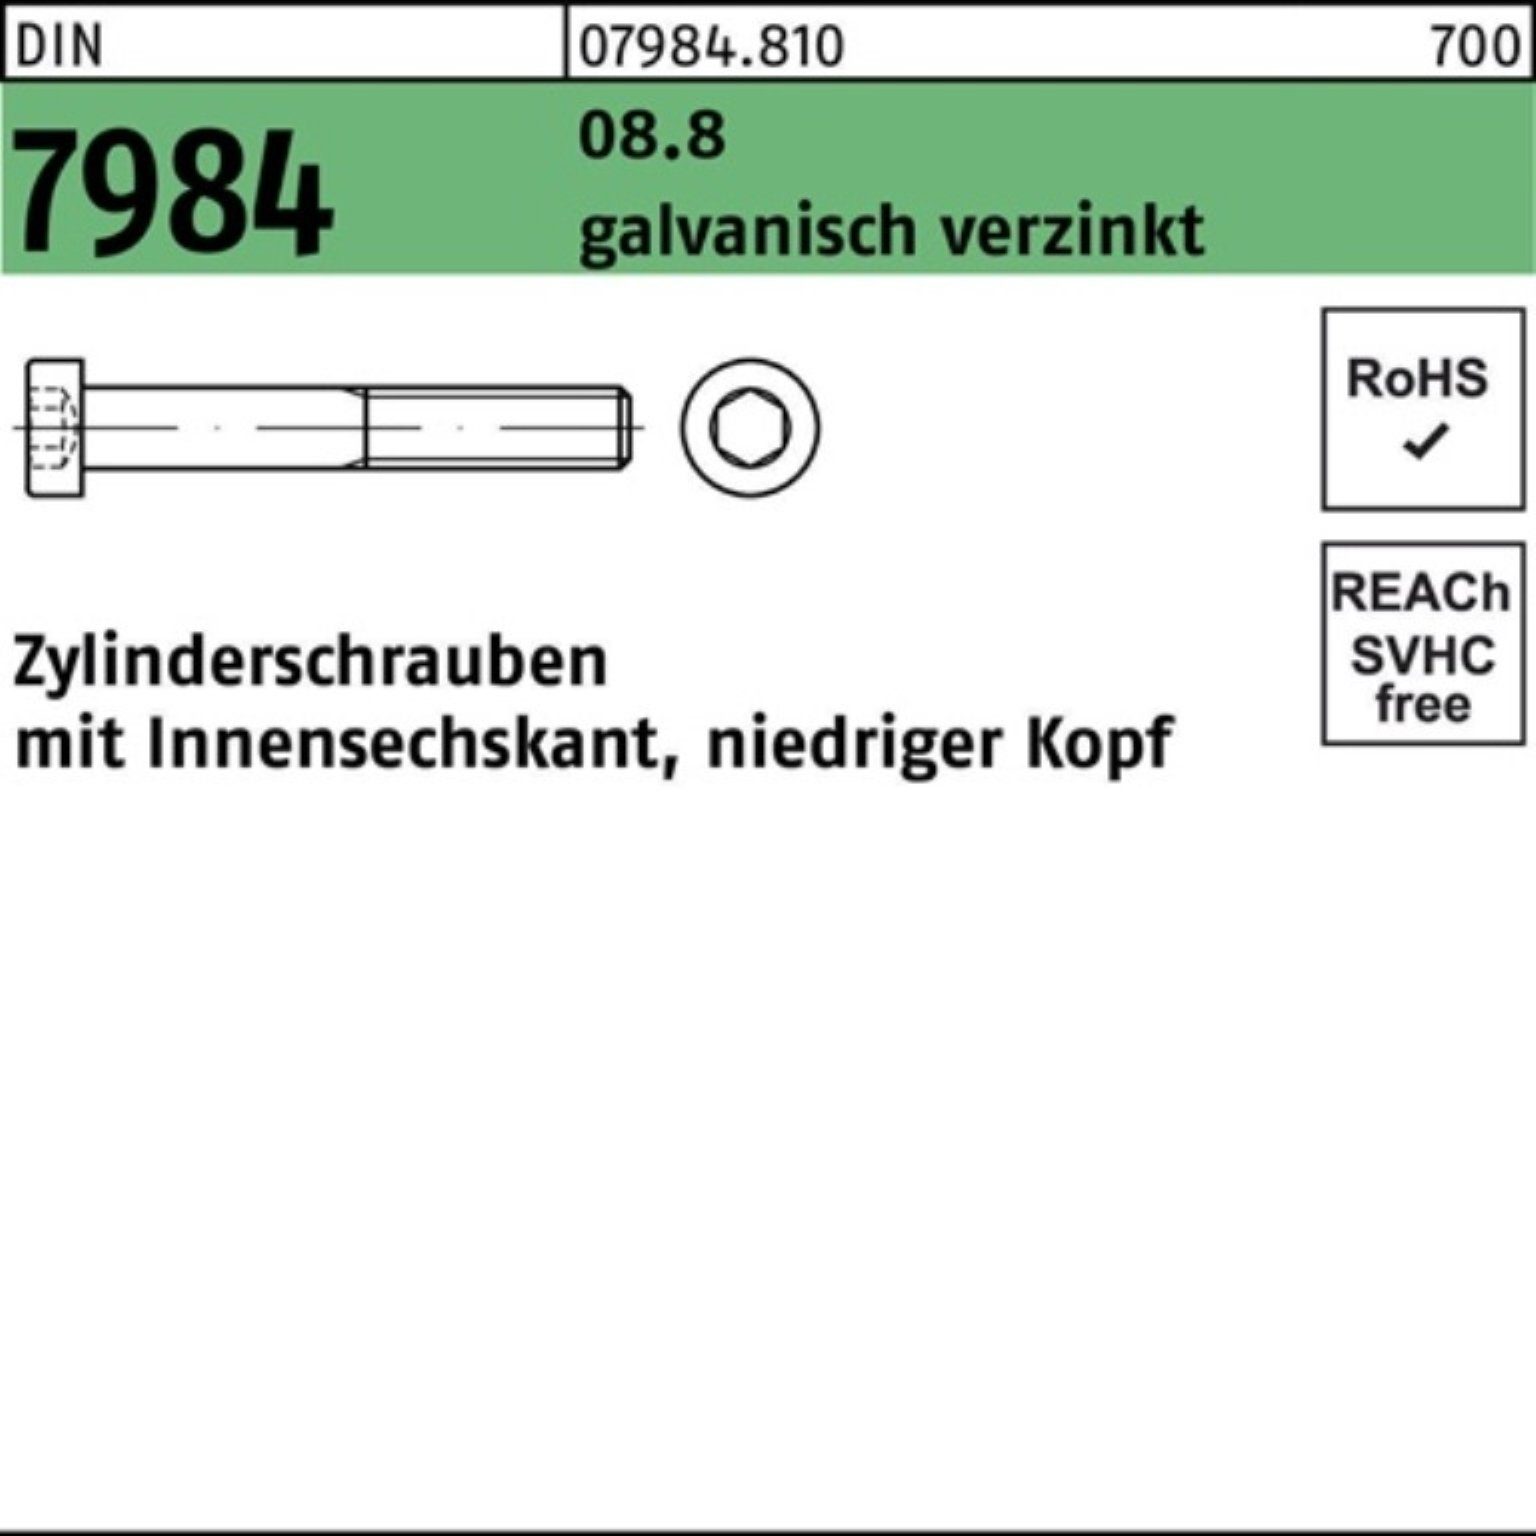 Reyher Zylinderschraube 100er Pack 8.8 galv.verz. Zylinderschraube DIN M8x100 1 7984 Innen-6kt